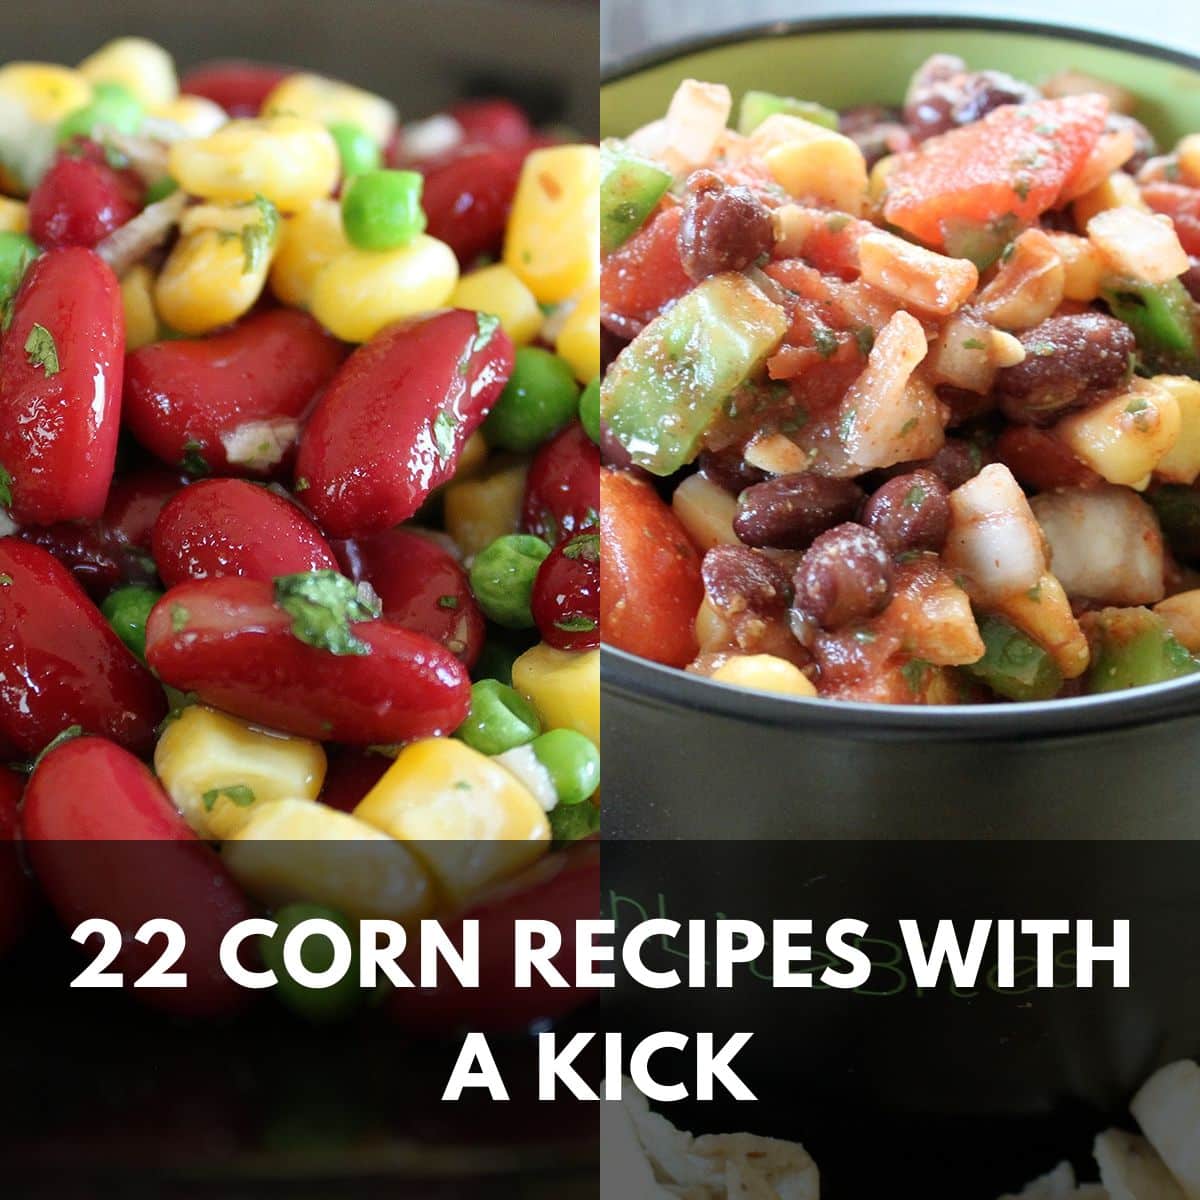 22 corn recipes with a kick main